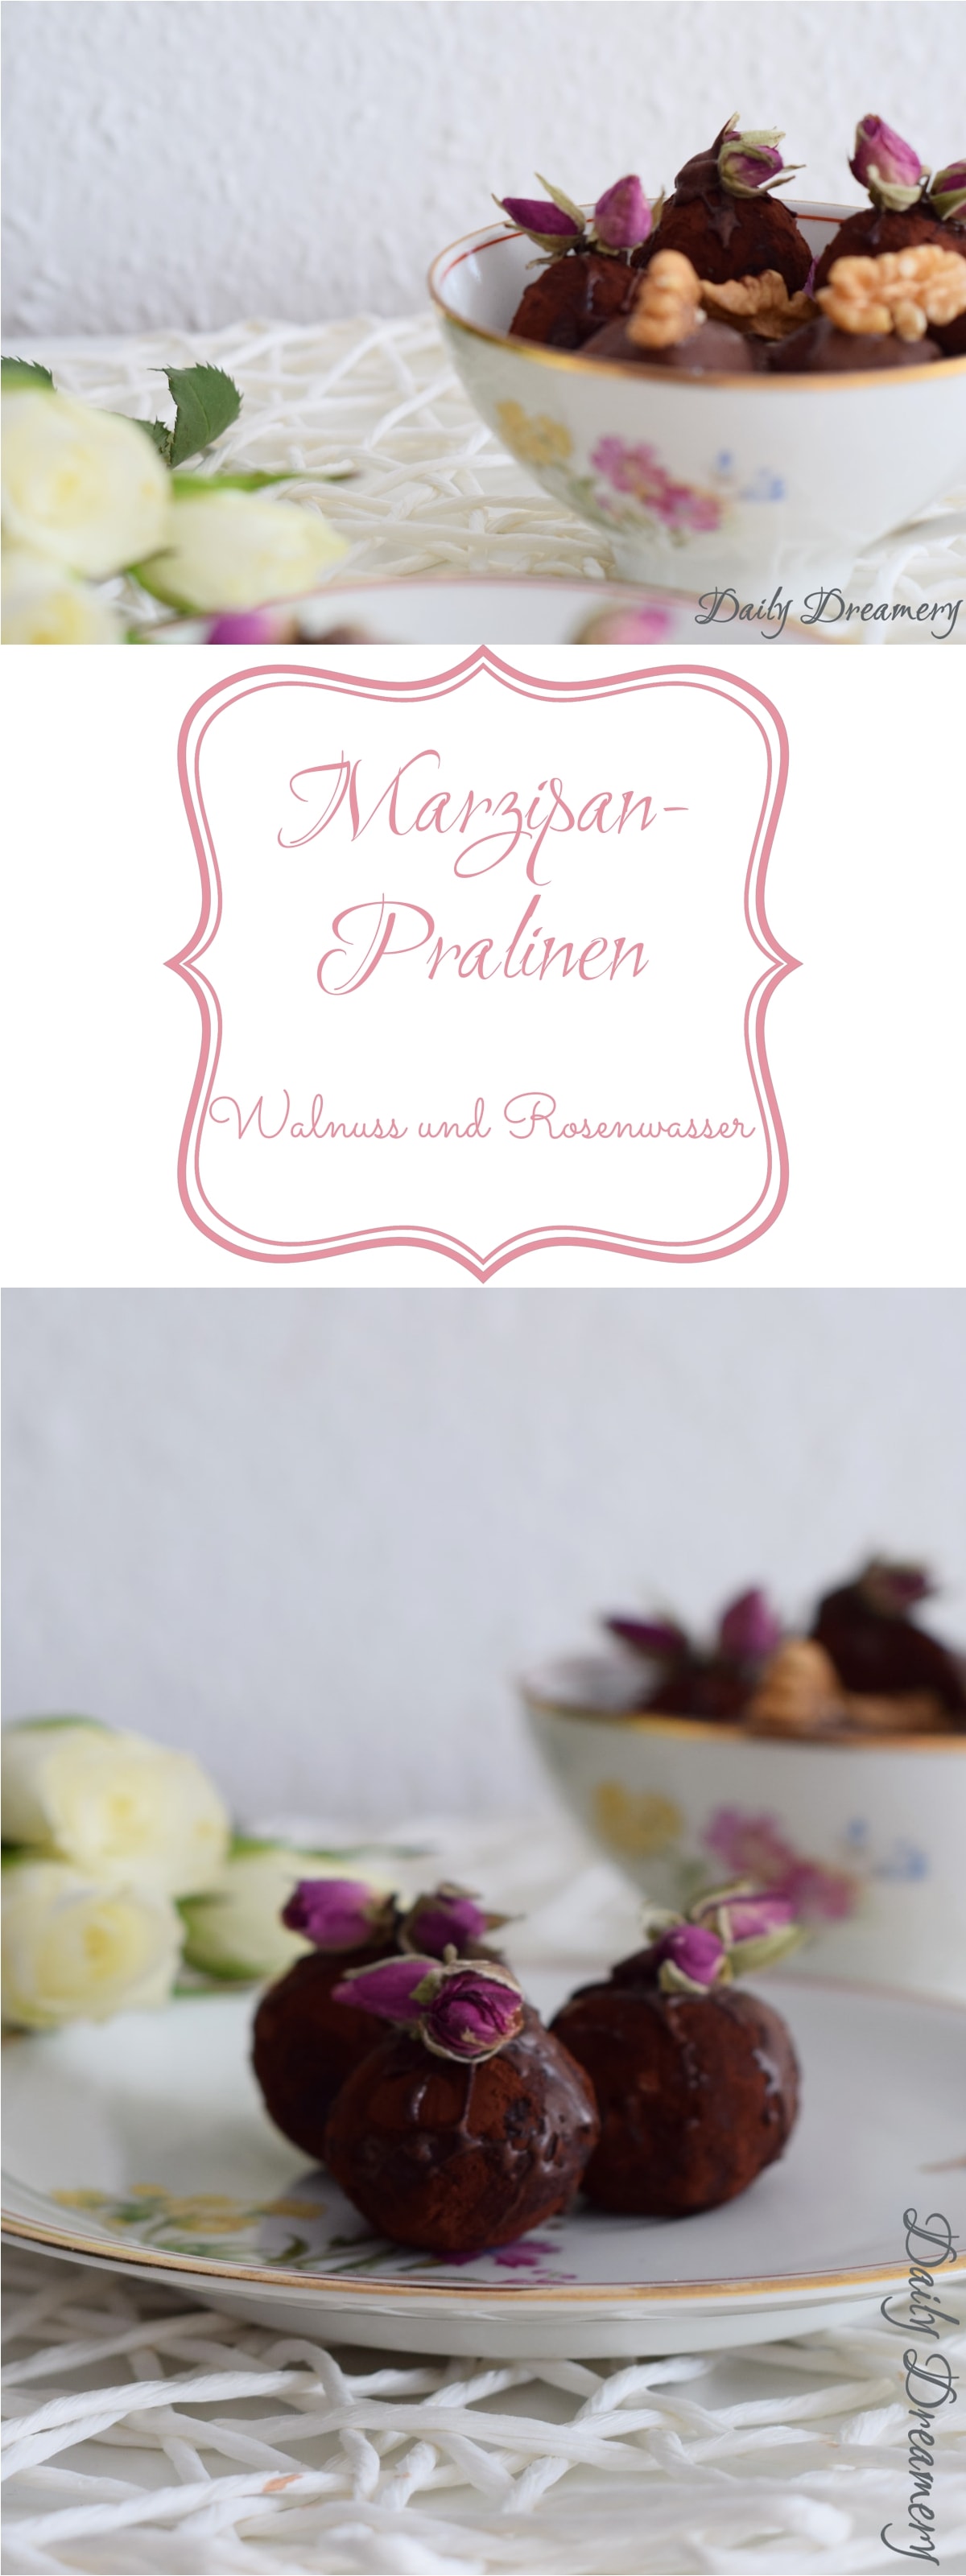 Marzipan-Pralinen mit Walnuss und Rosenwasser